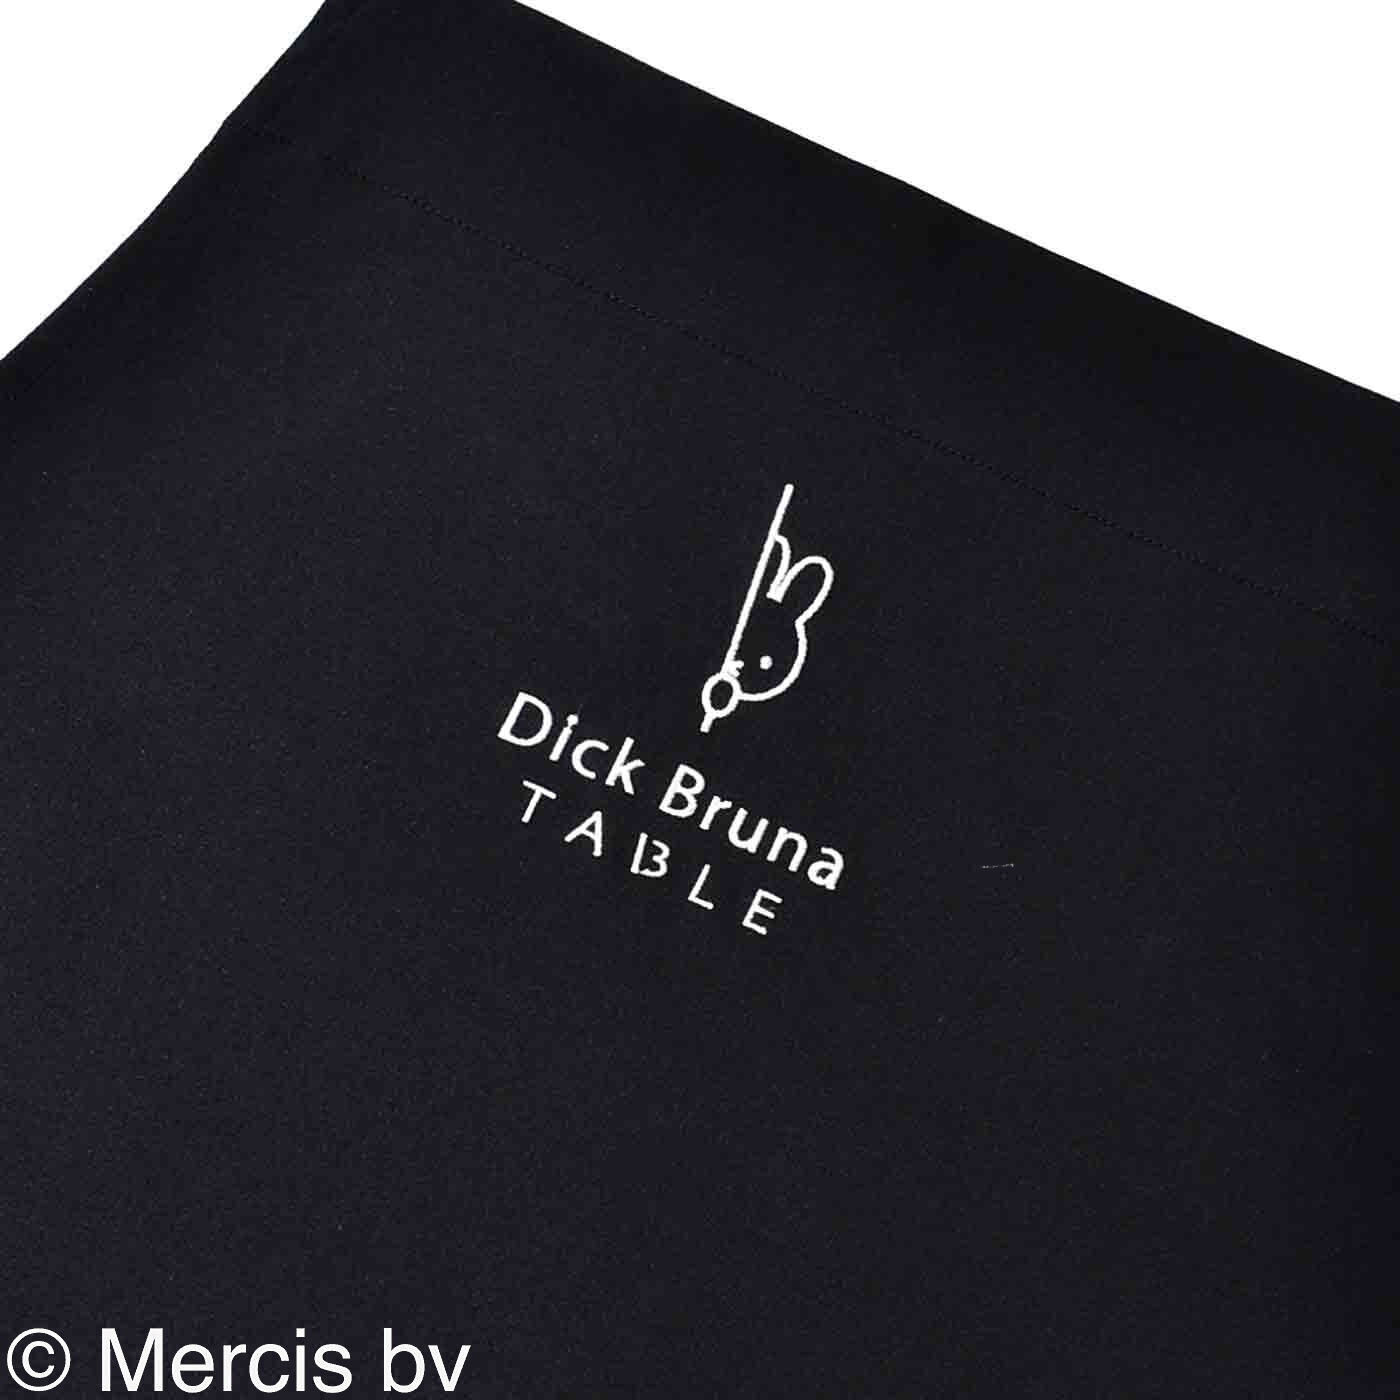 ディック・ブルーナ テーブル|Dick Bruna TABLE　エプロン〈ブラック〉|胸に、Dick Bruna TABLEのワンポイント刺しゅう